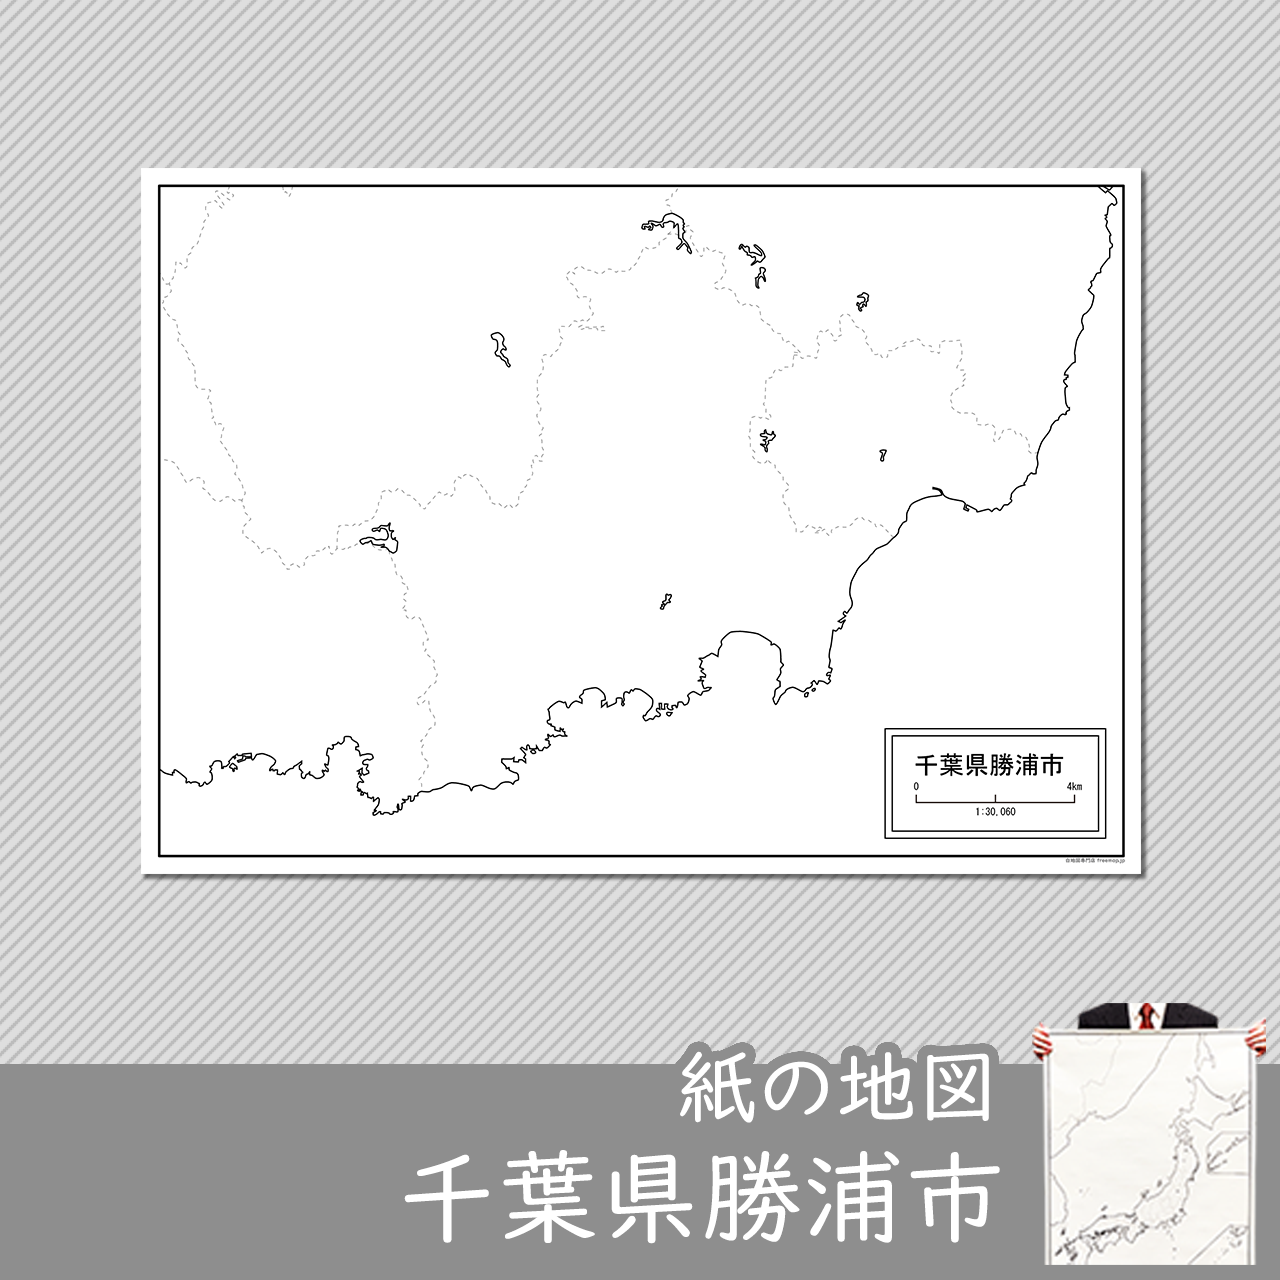 勝浦市の紙の白地図のサムネイル